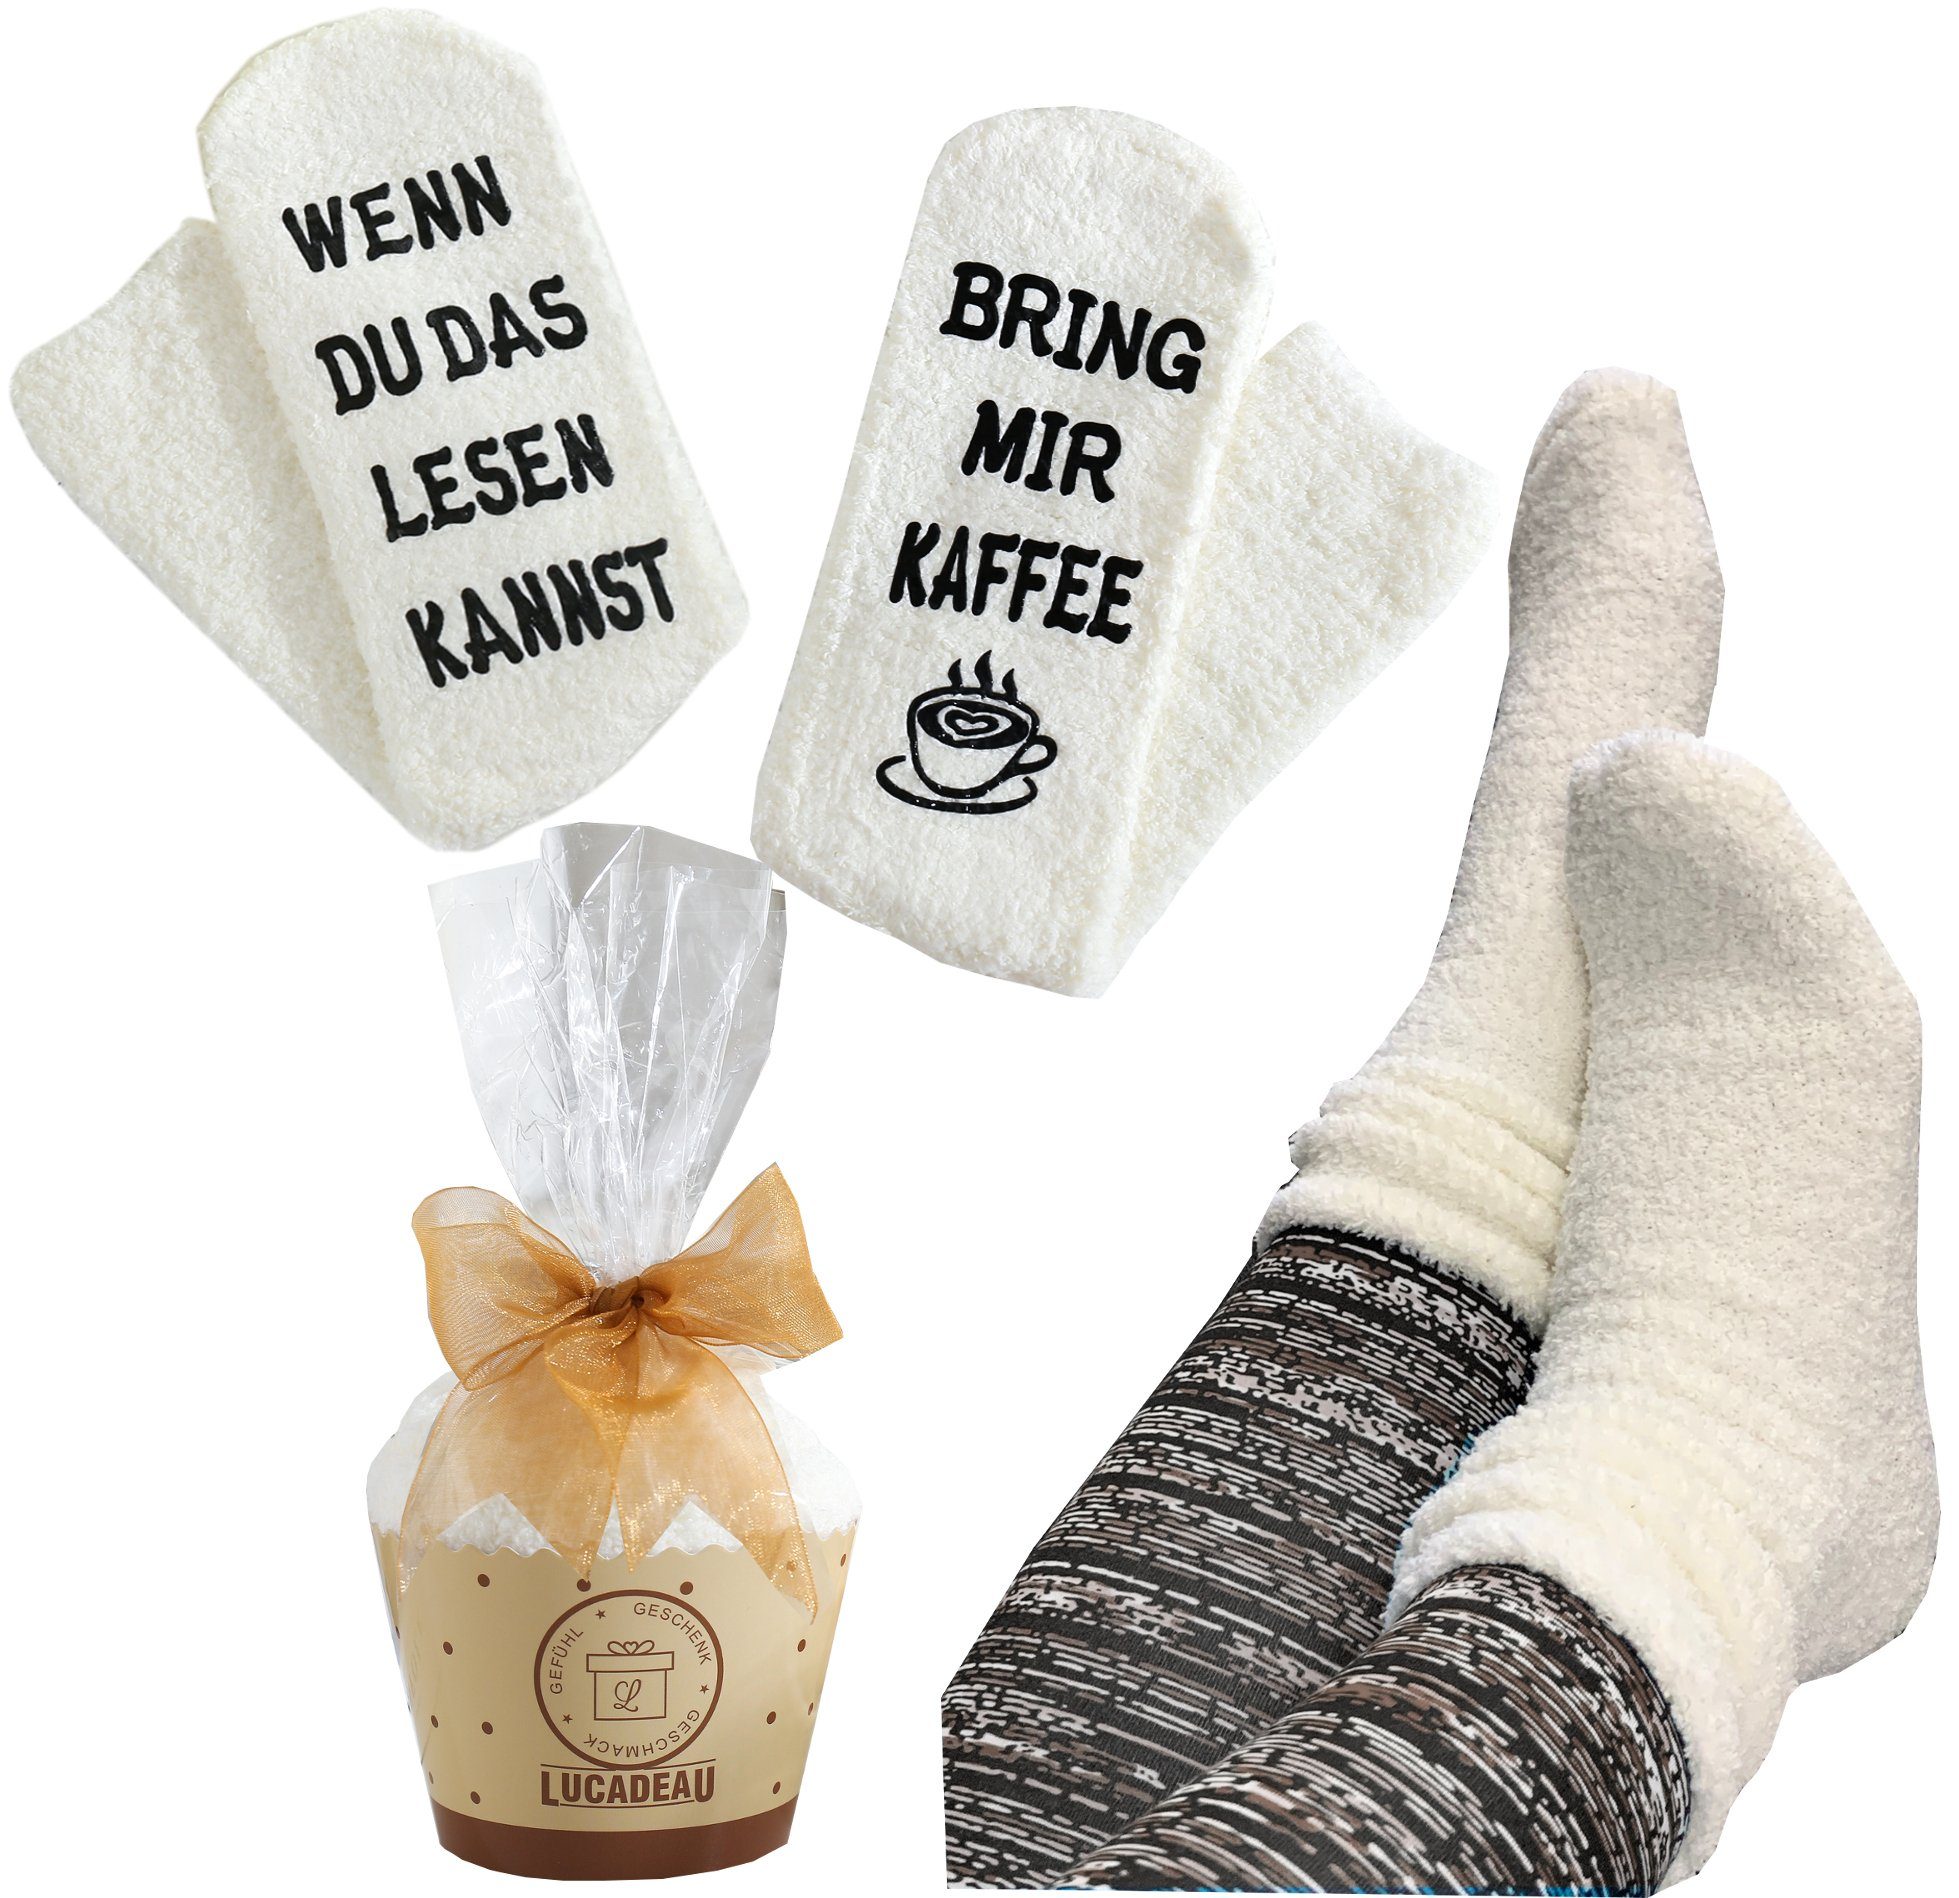 Lucadeau Kuschelsocken mit Spruch "Wenn Paar) du das (Cupcake Kaffee" 1 Verpackung, bring mir 36-43, Gr. rutschfest, kannst, lesen creme Weihnachtsgeschenke